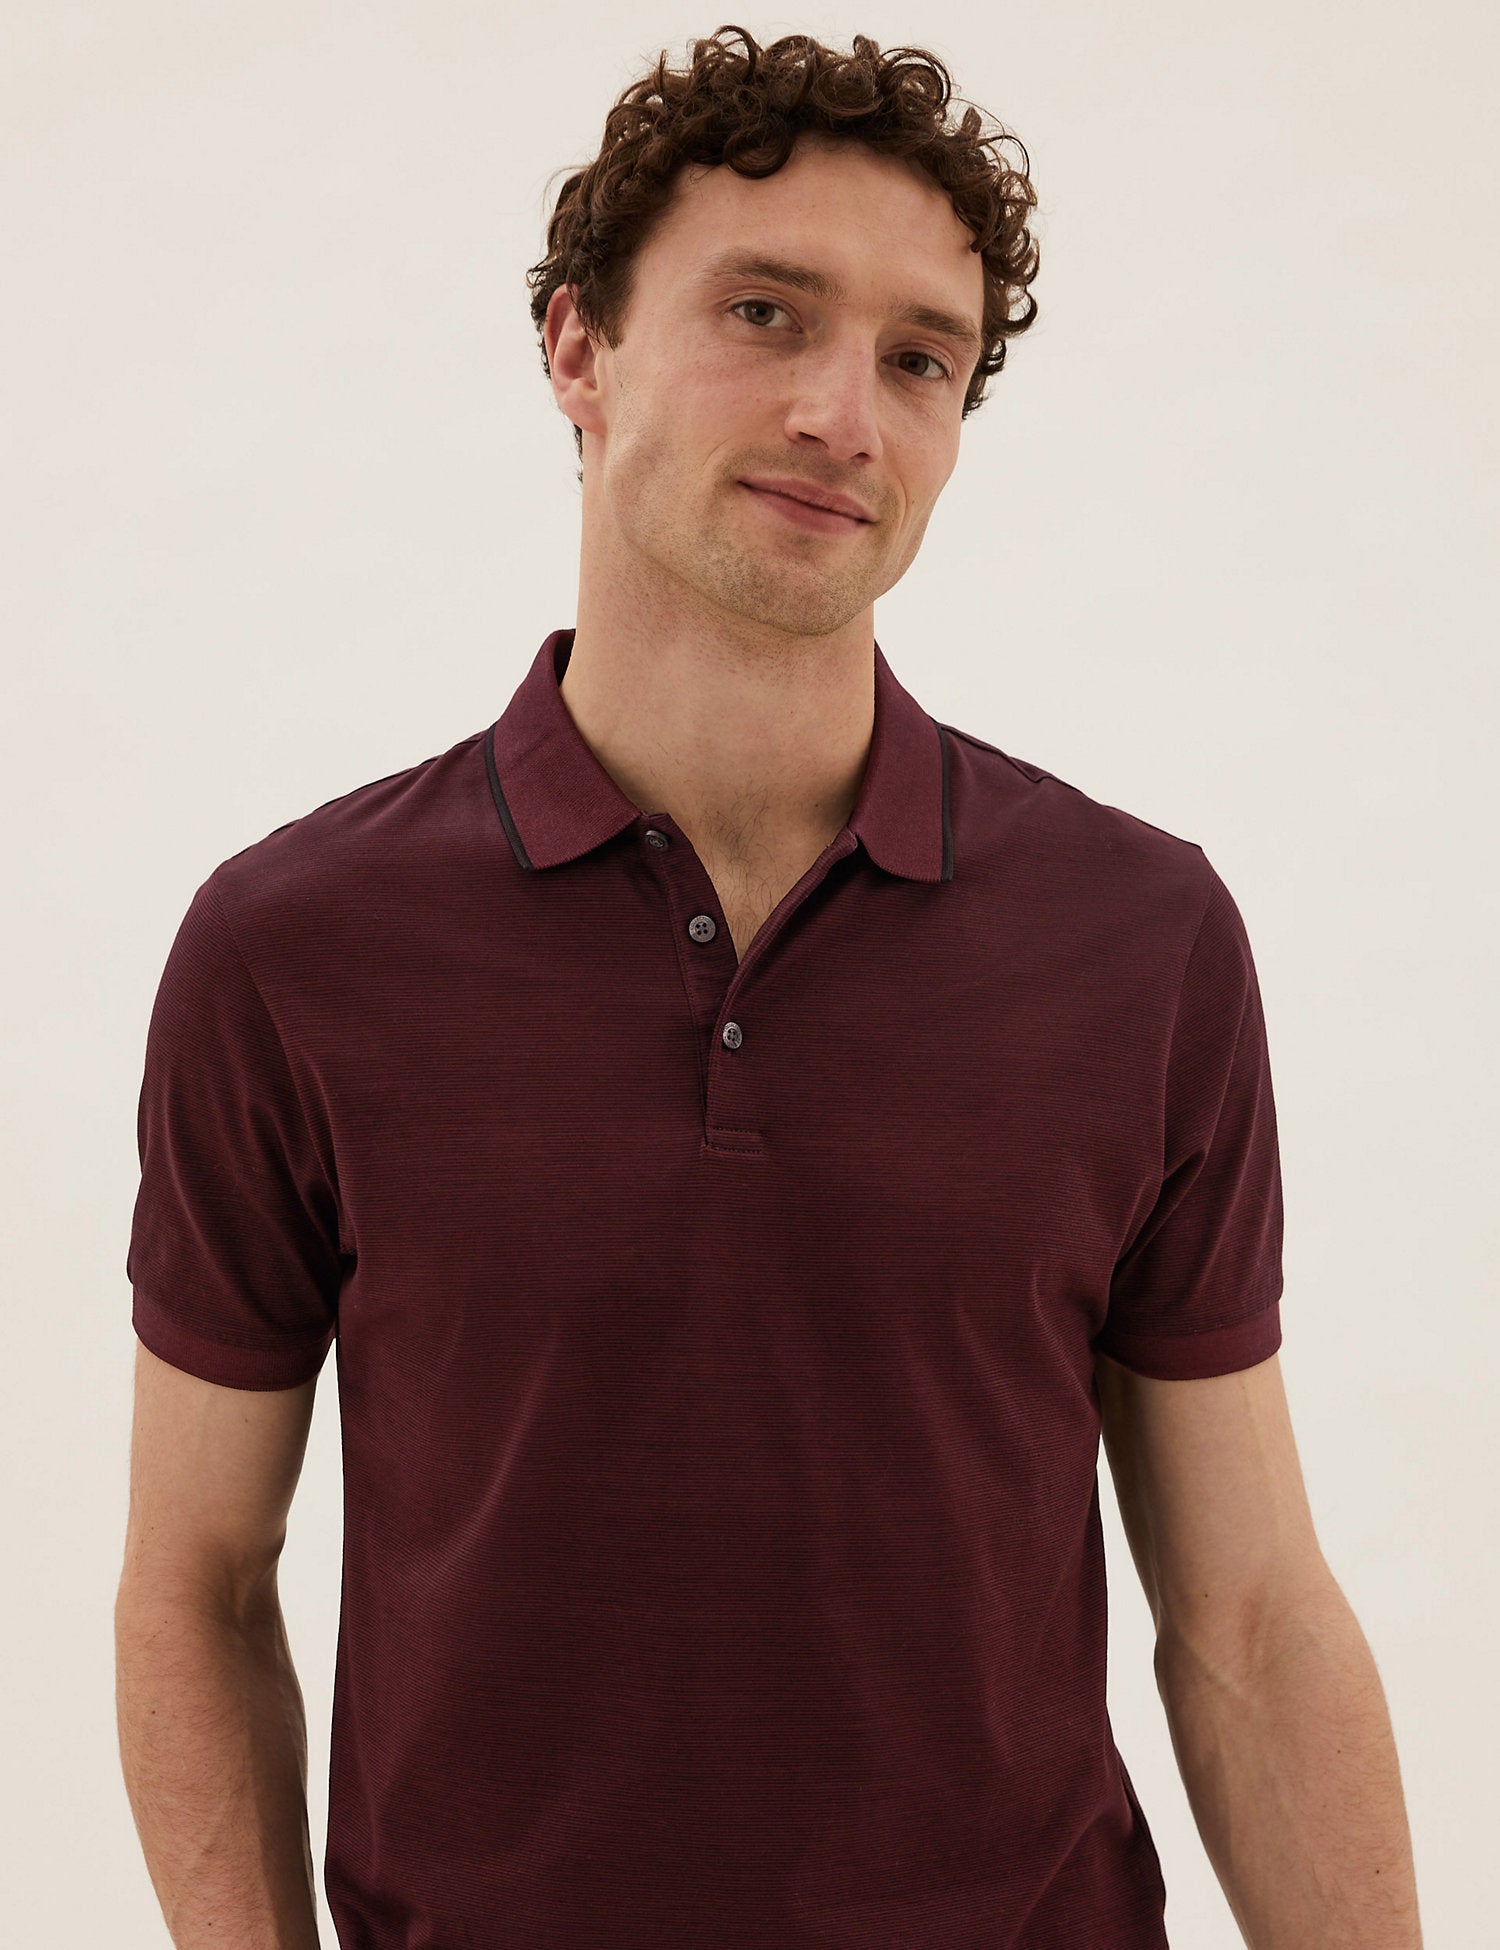 Premium Cotton Striped Polo Shirt